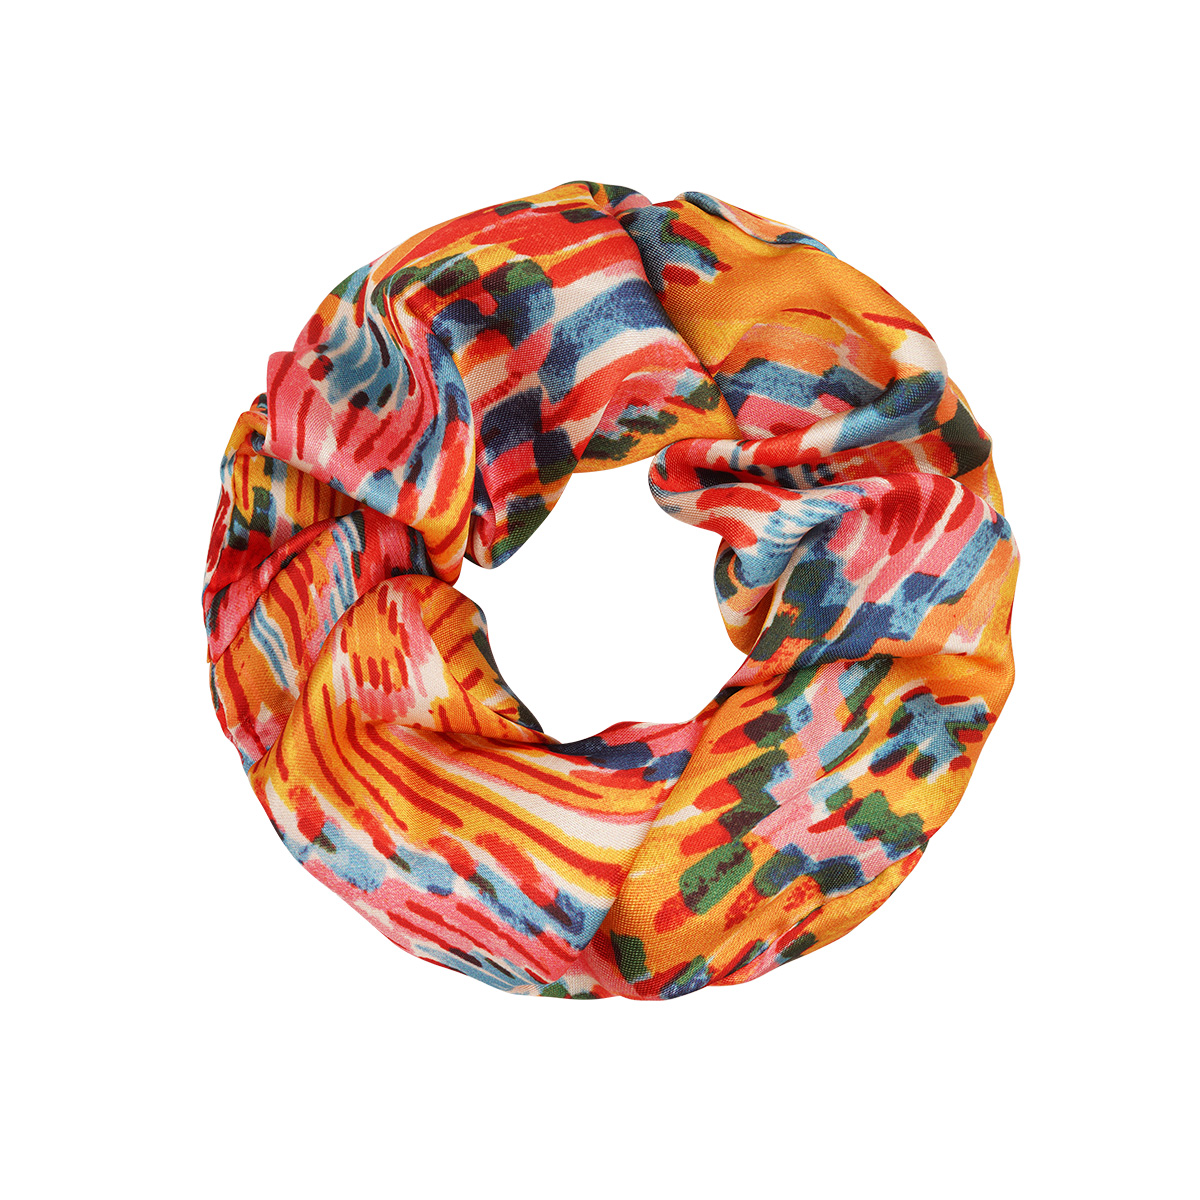 Colourful scrunchie